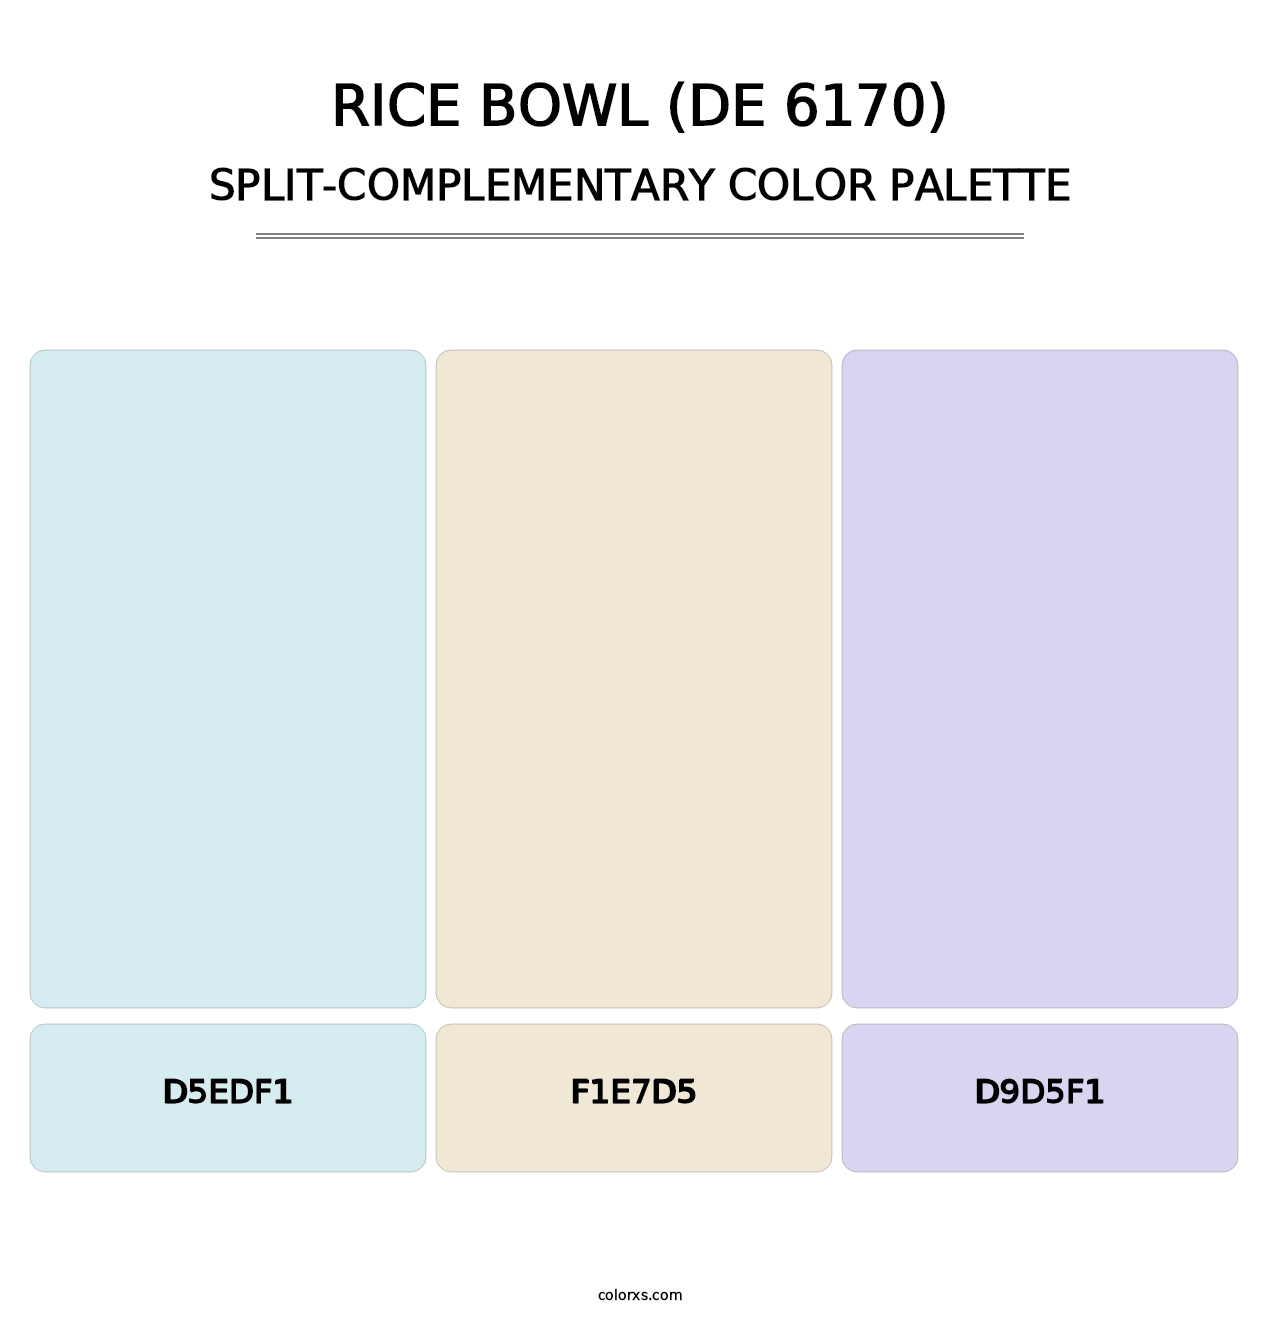 Rice Bowl (DE 6170) - Split-Complementary Color Palette